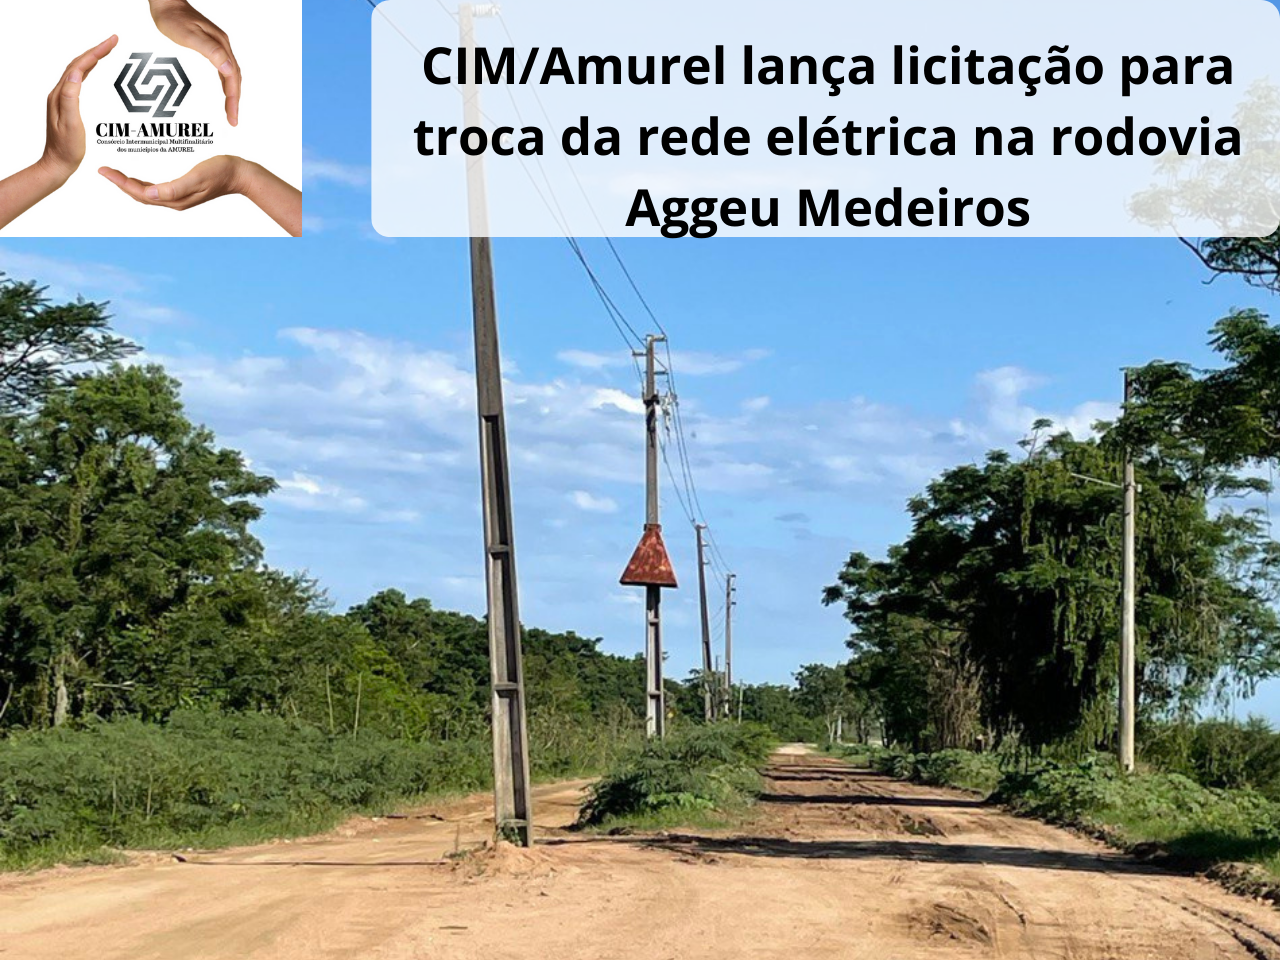 Read more about the article CIM/Amurel lança licitação para troca da rede elétrica na rodovia Aggeu Medeiros